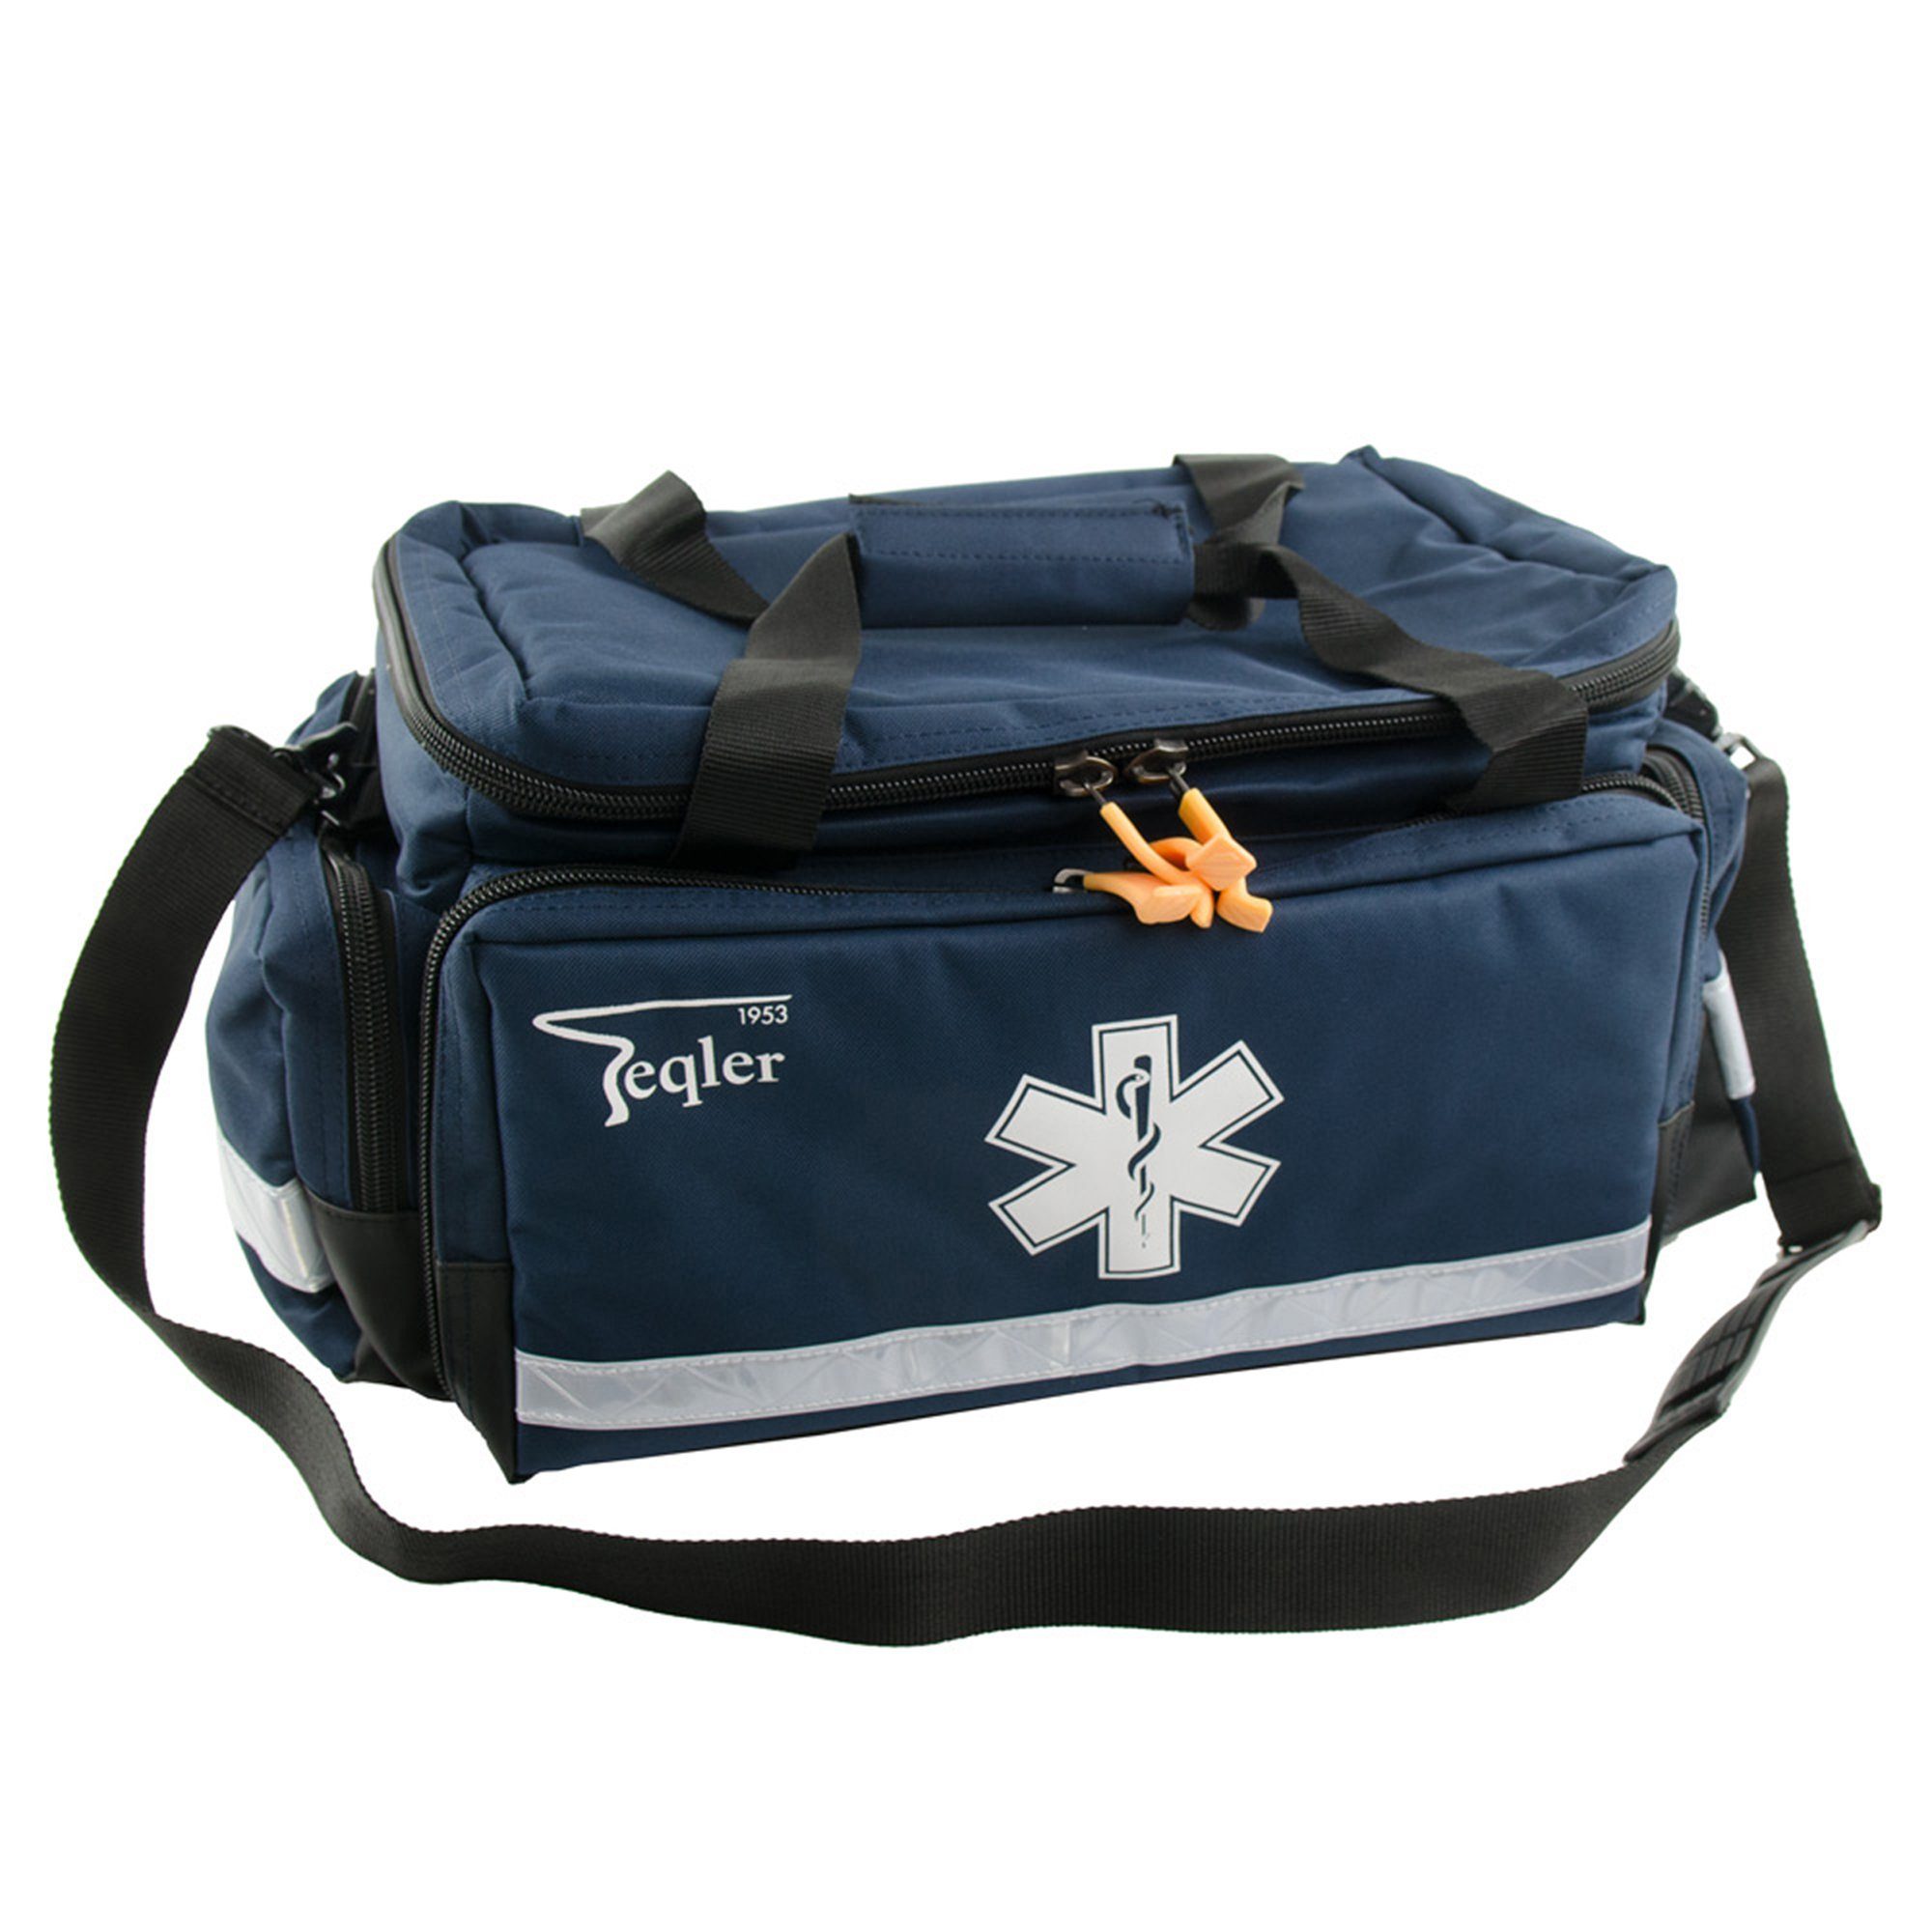 TEQLER Arzttasche Notfalltasche «Lüttich» groß Nylon 51 x 26 x 31 cm Blau